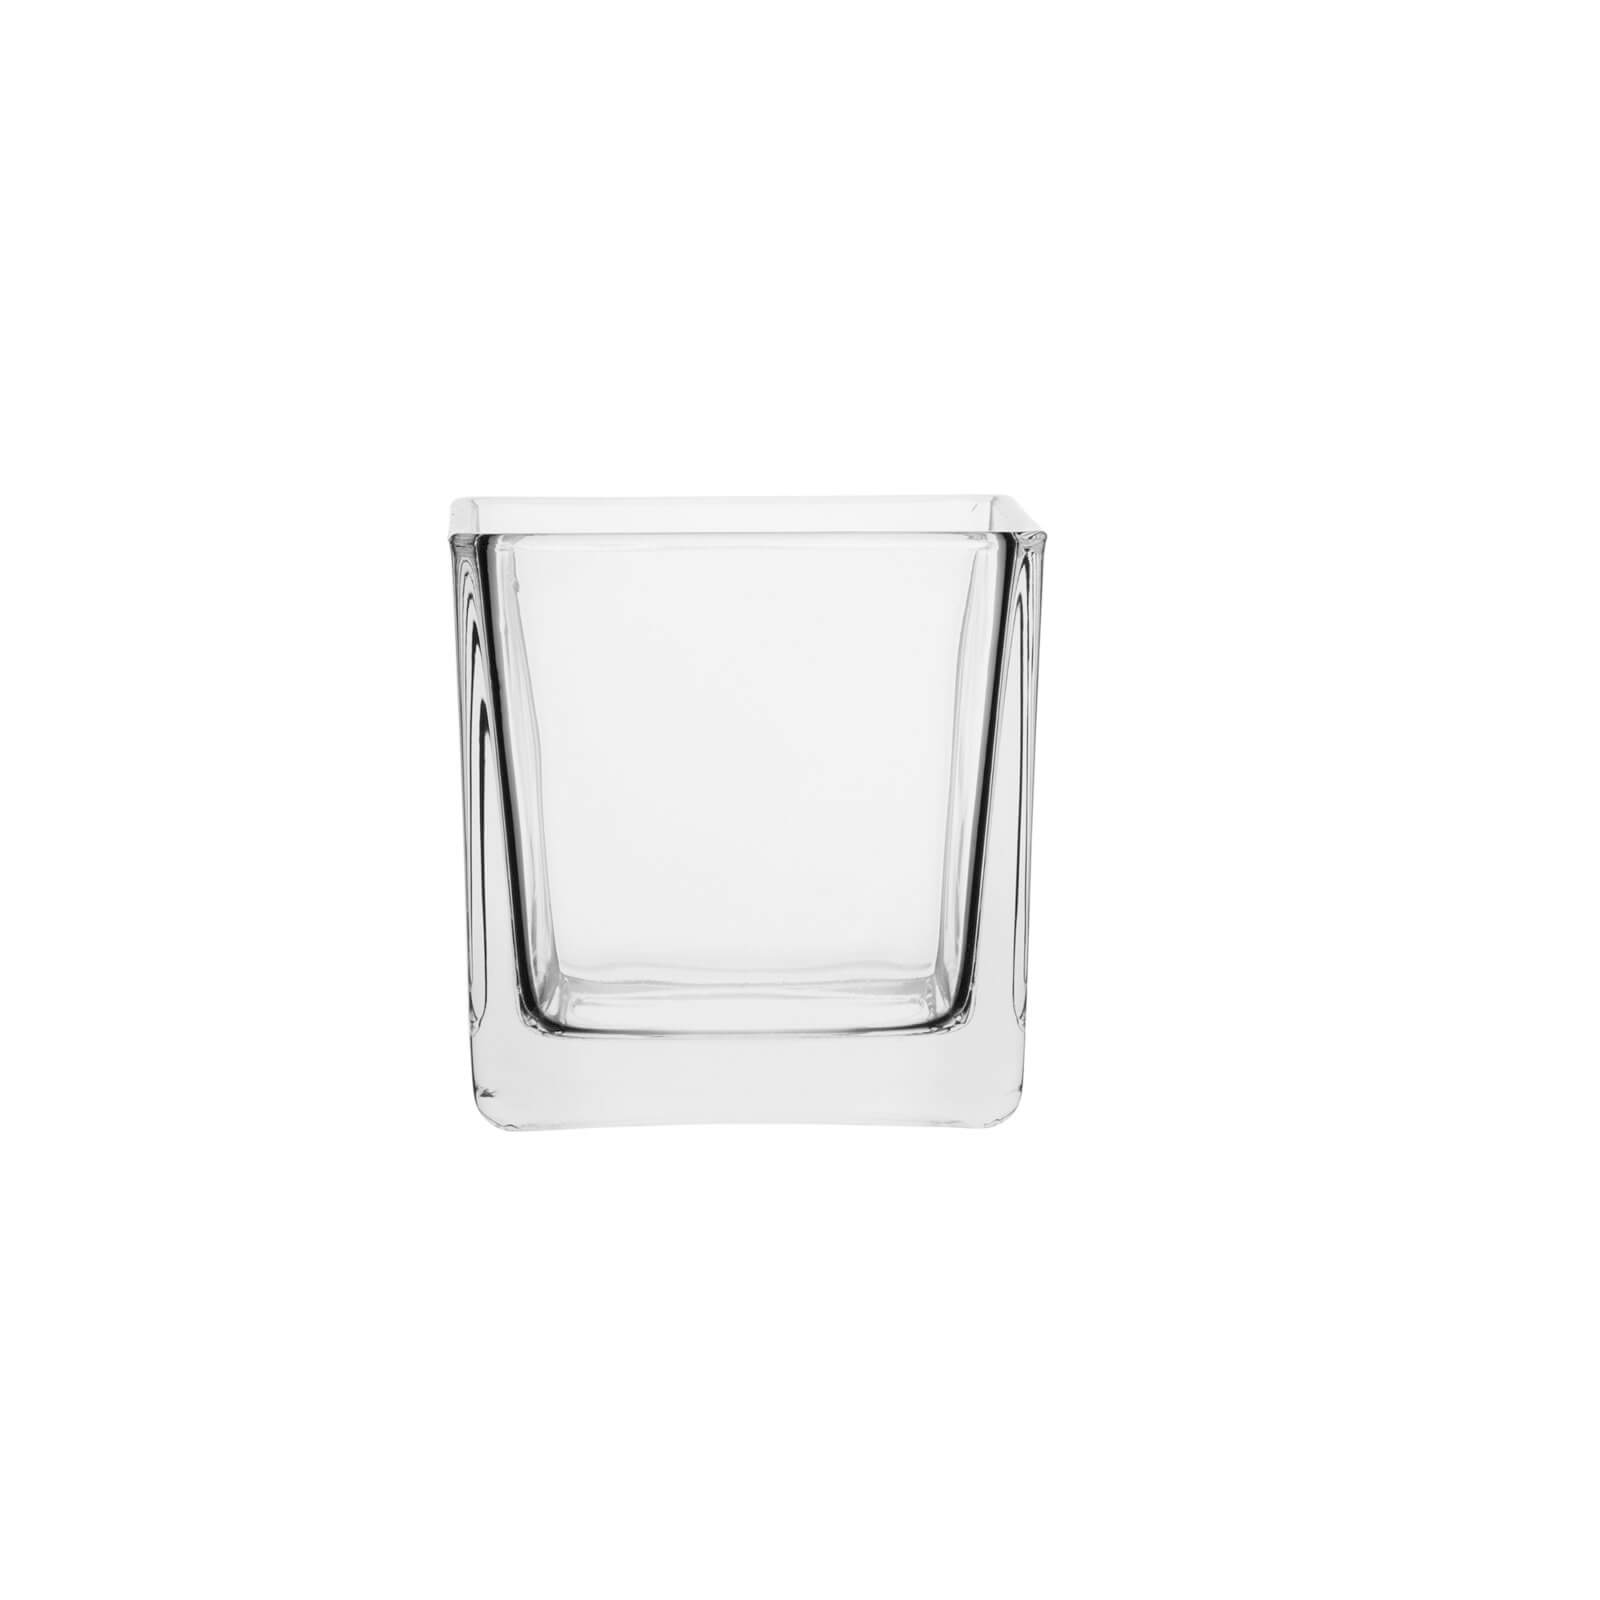 Kwadrat świecznik pojemnik szklany wazon 8x8 70210 kpl. 6 szt.